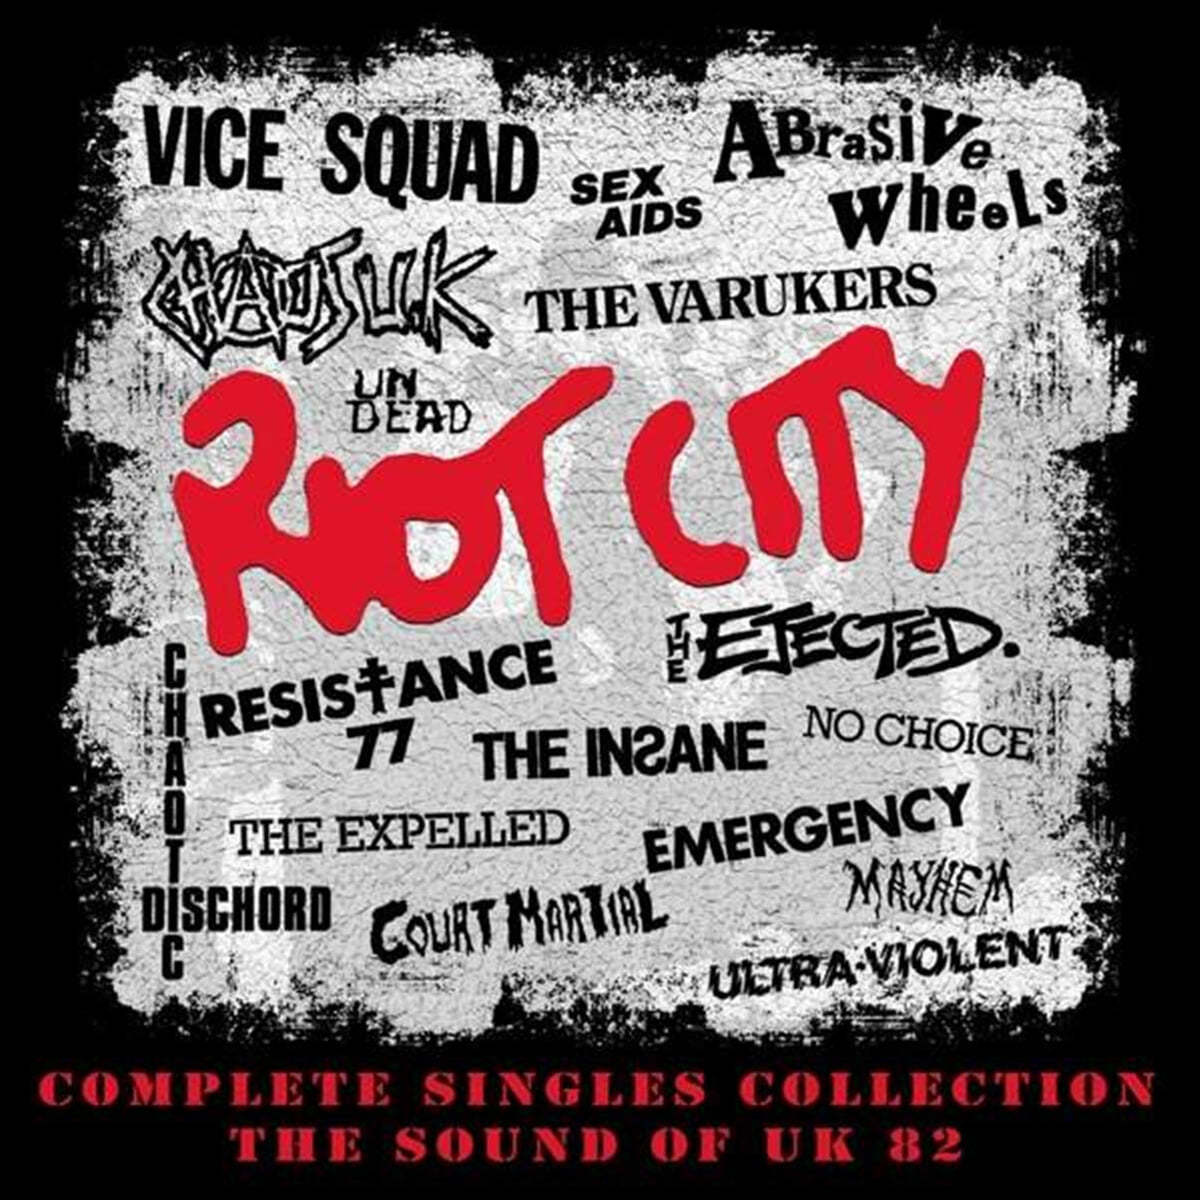 리오트 시티 - 사운즈 오브 UK 82 (Riot City - Complete Singles Collection : The Sound Of UK 82) 